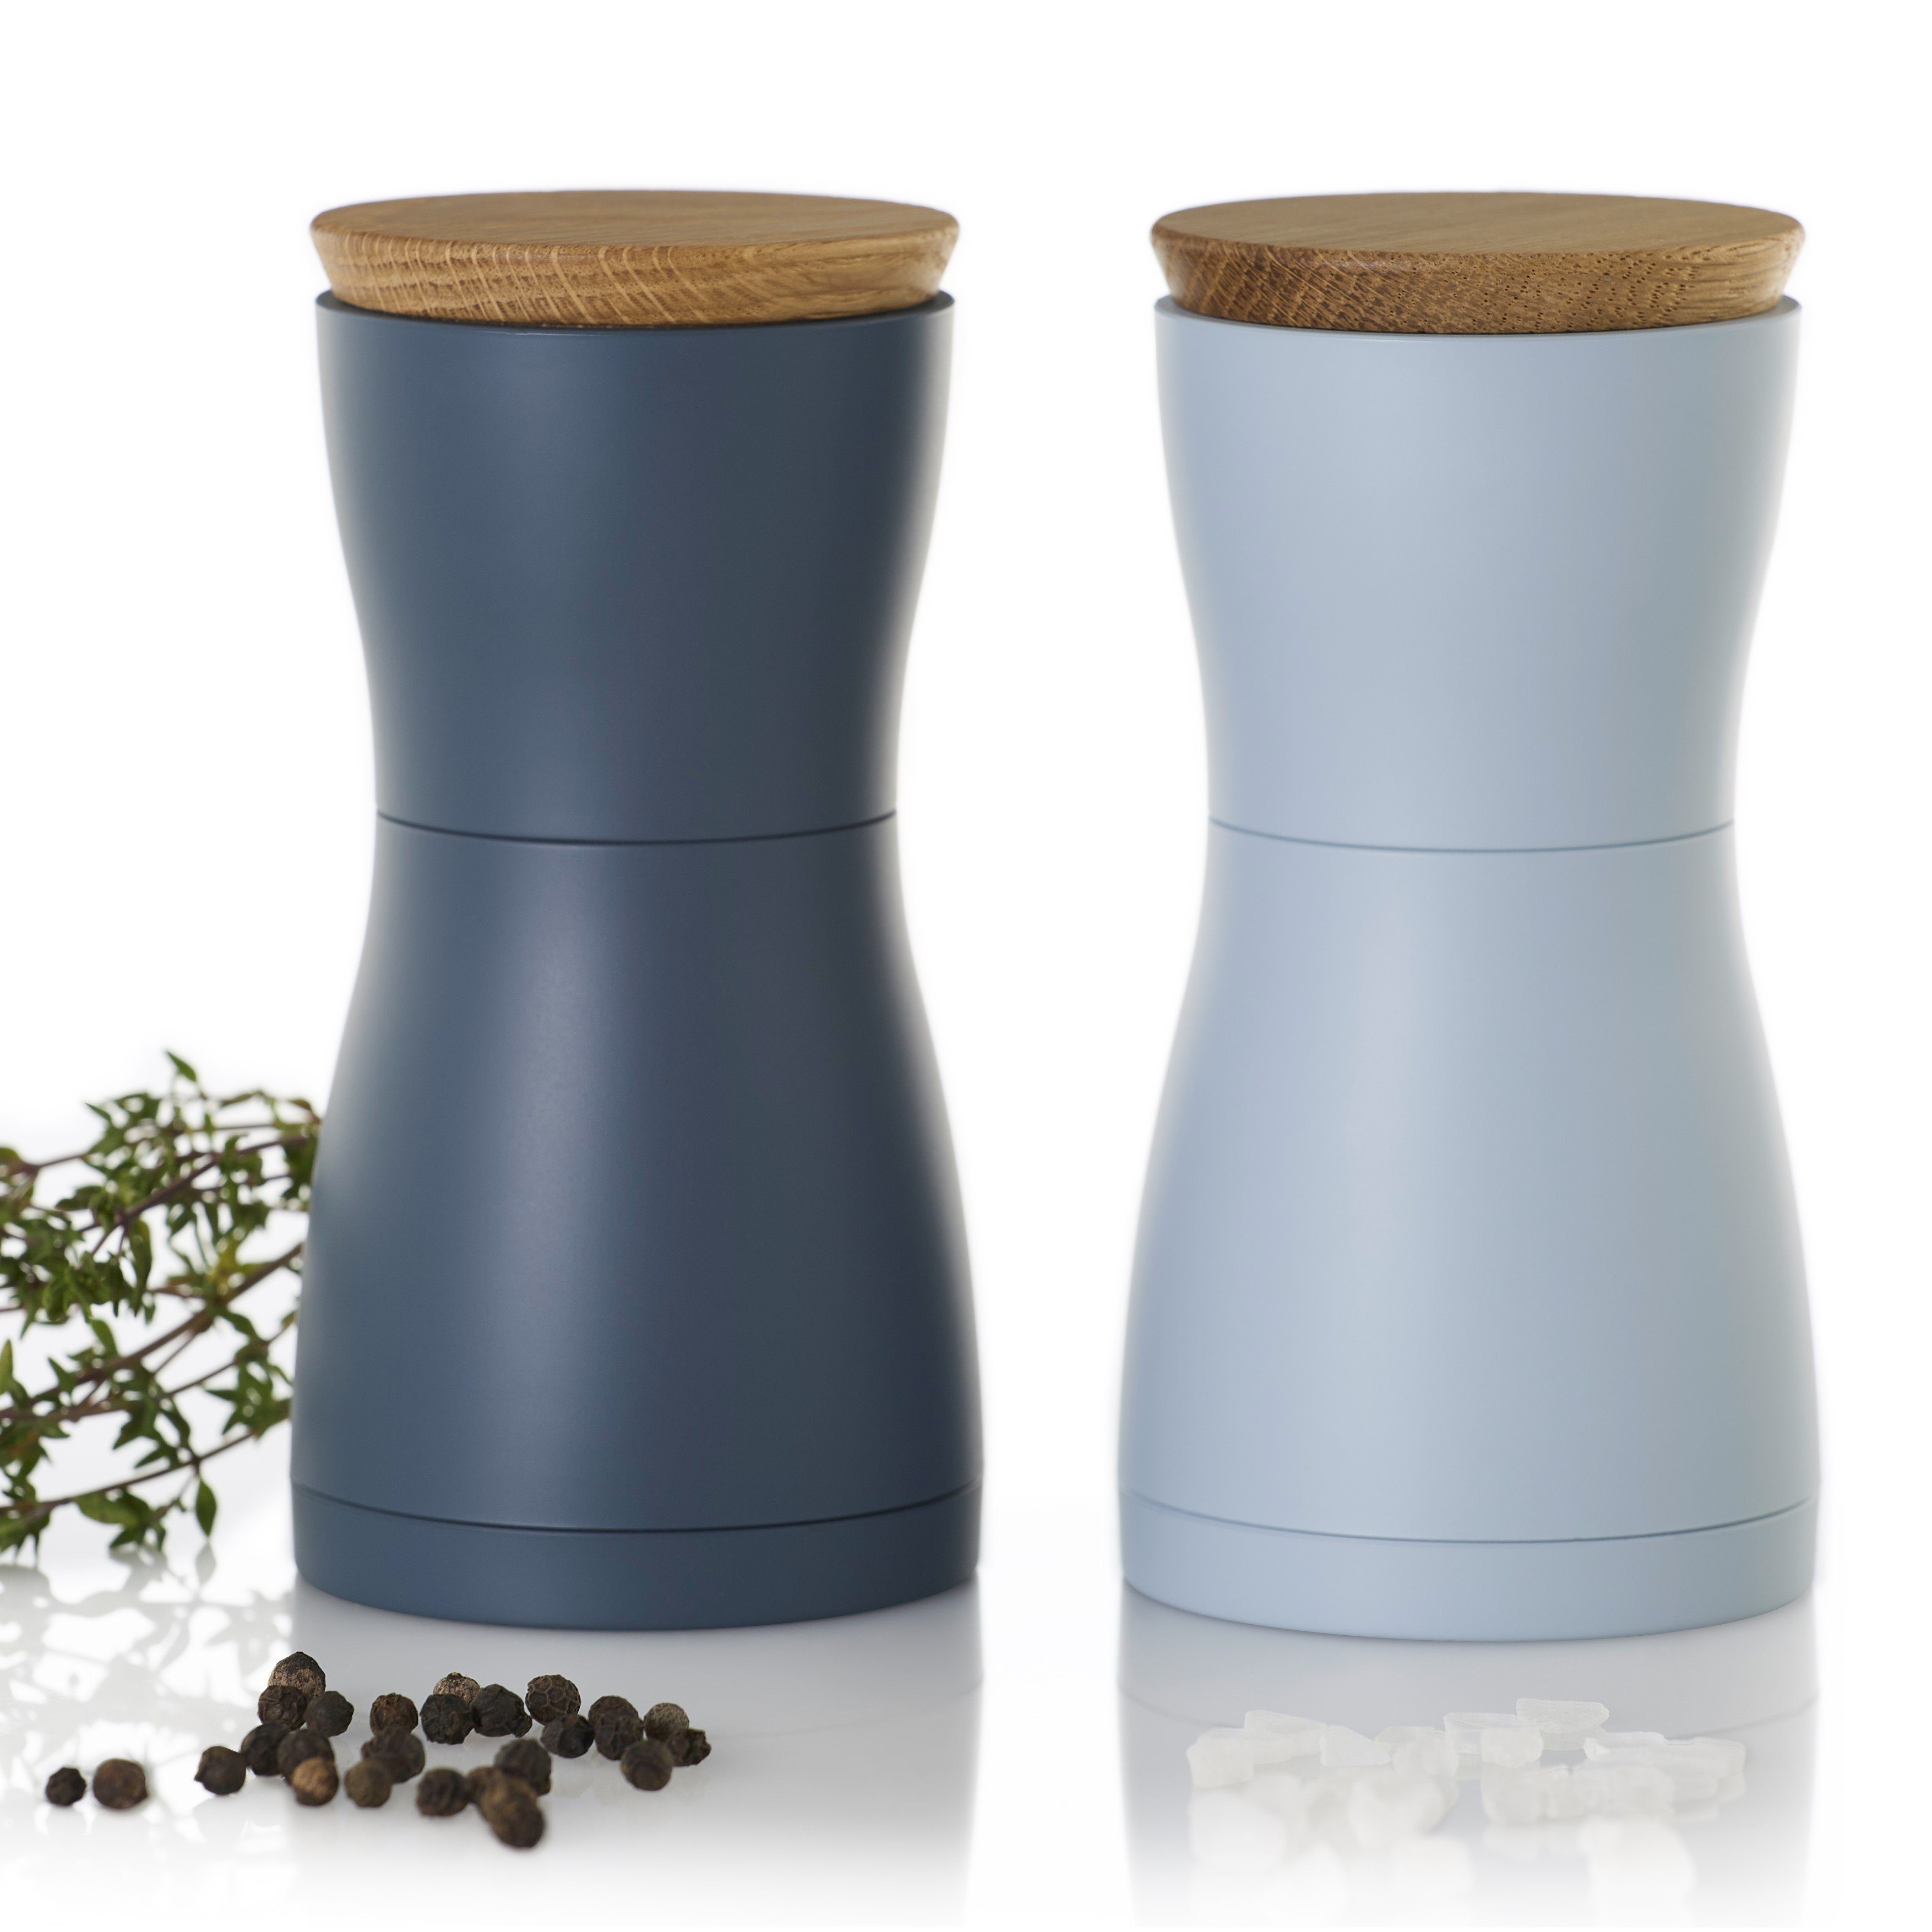 AdHoc Salz-/Pfeffermühle Set aus 2 Gewürzmühlen TWIN manuell, (2 Stück), Hochwertiges Keramik-Mahlwerk, modernes Design